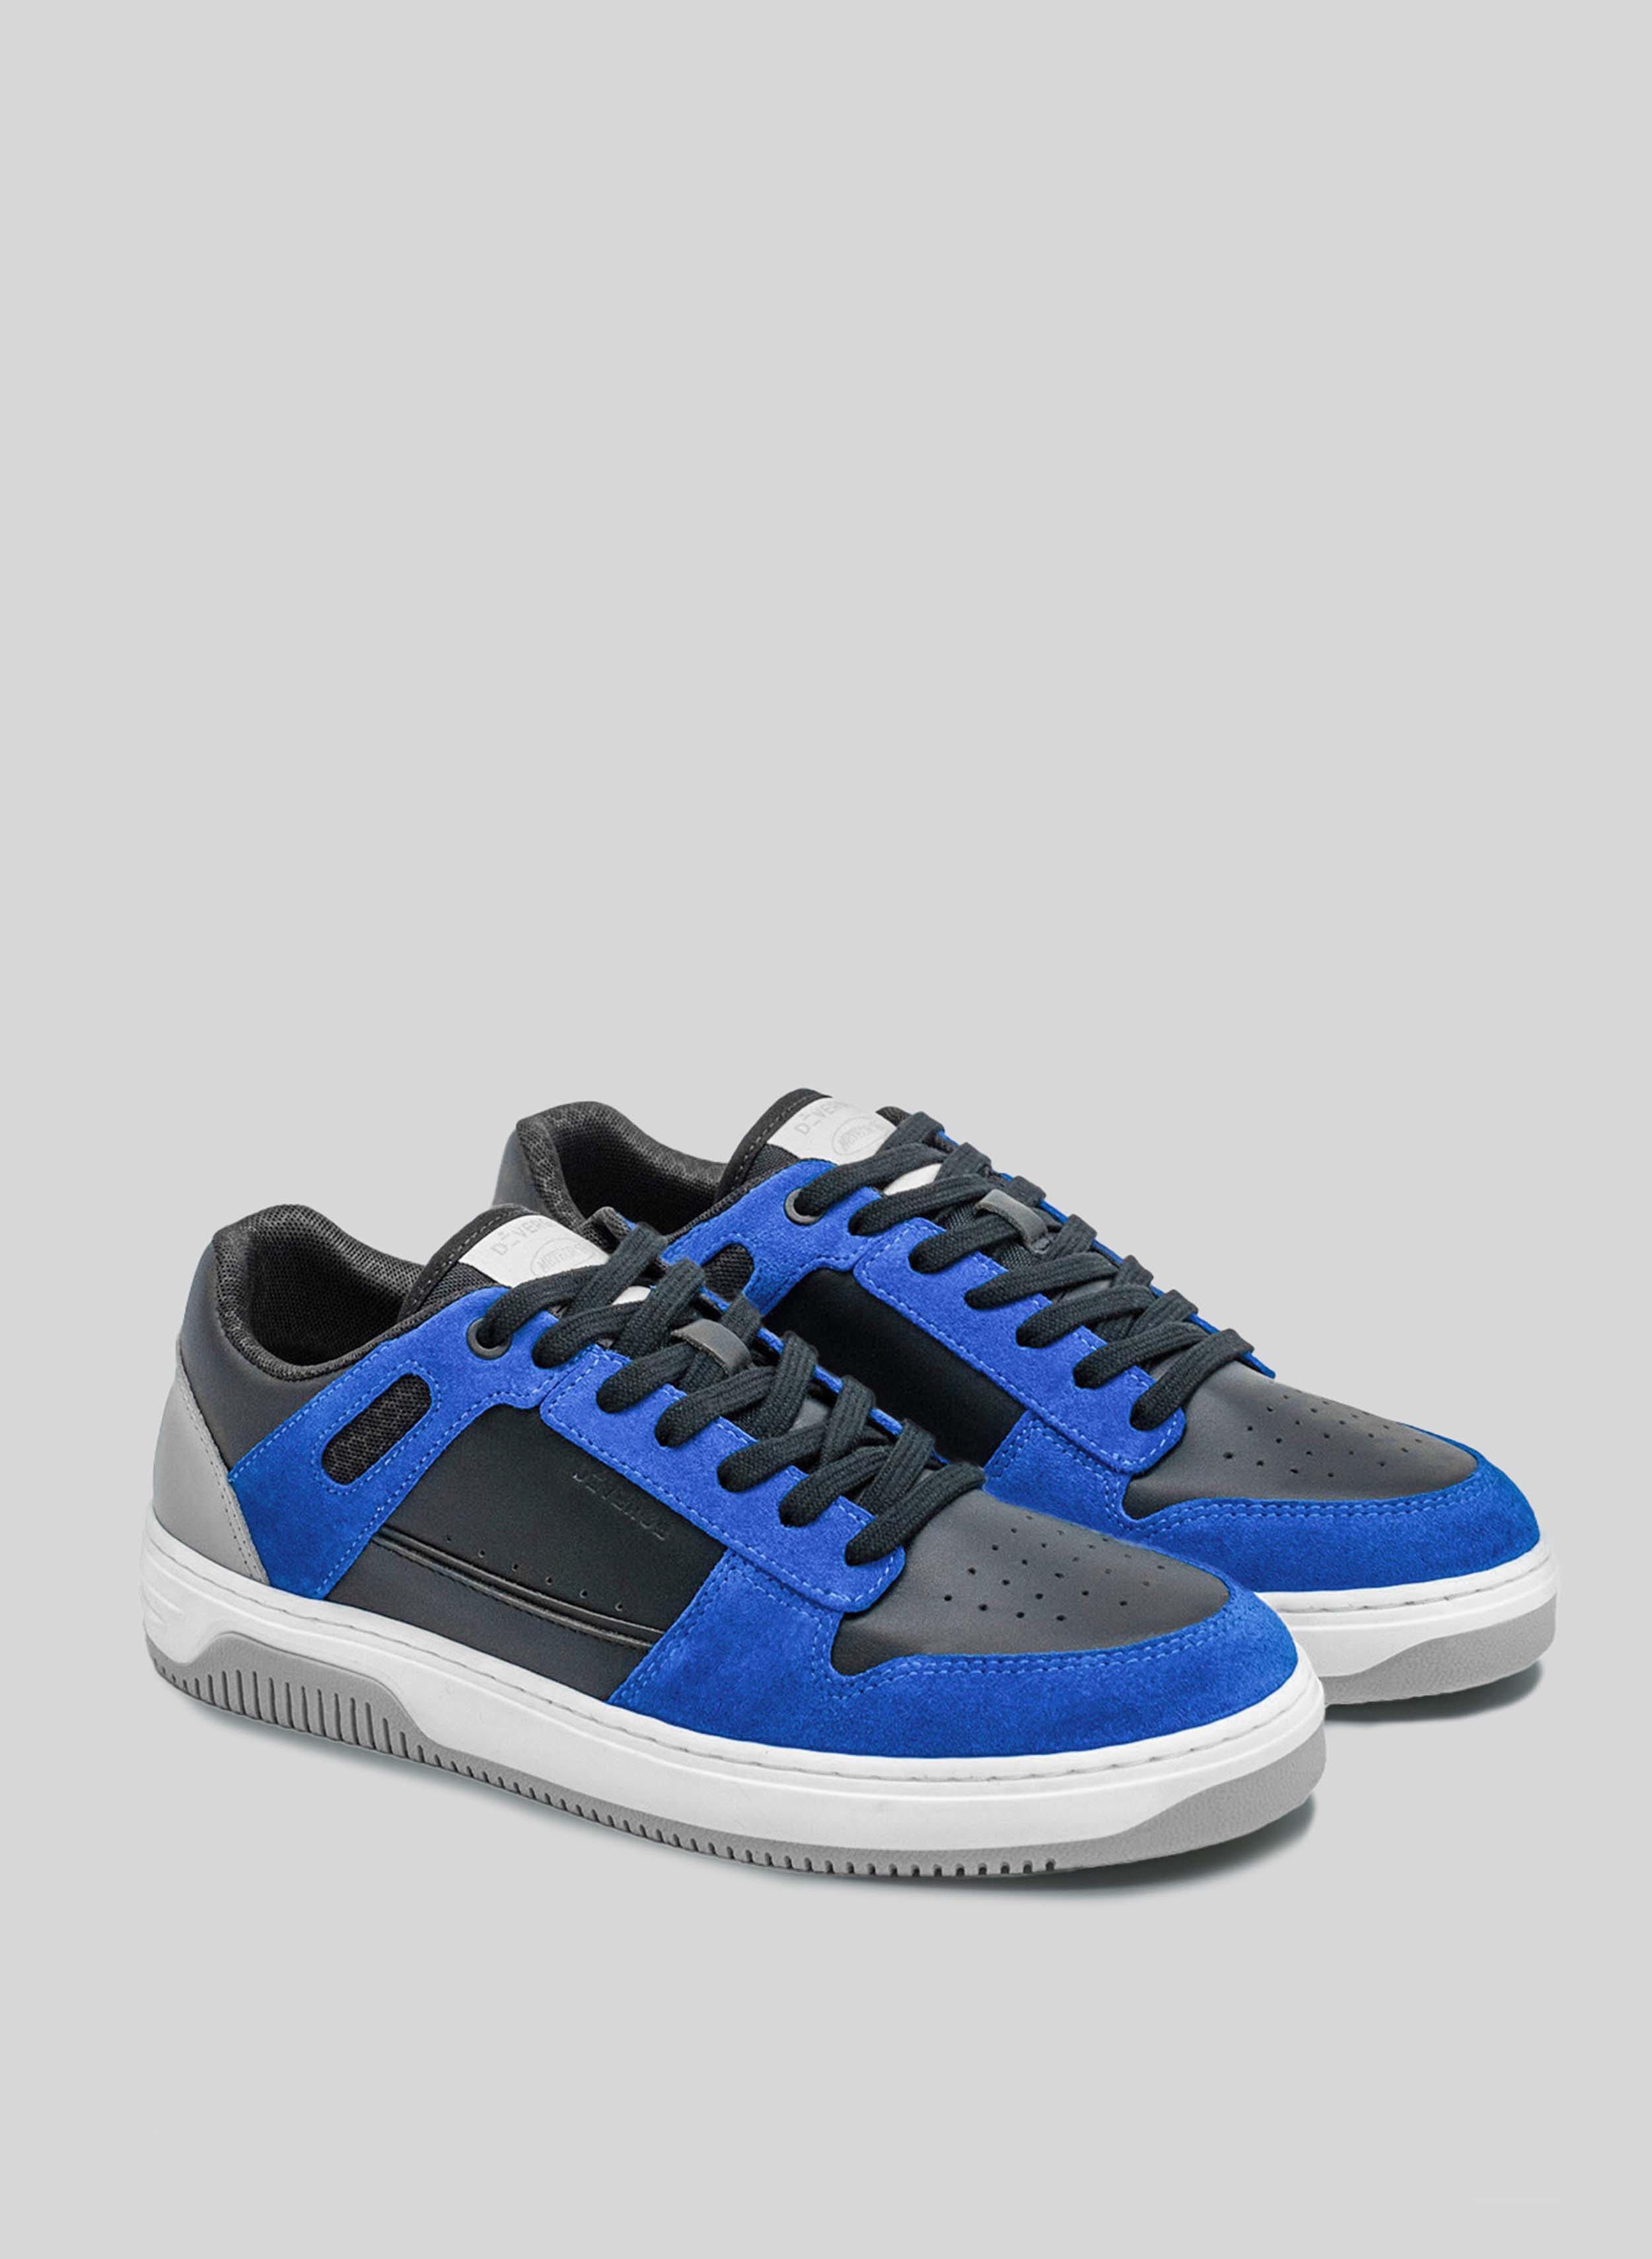 sneakers azul y negro con suela blanca y gris de Diverge, promoviendo el impacto social y el calzado personalizado a través del proyecto imagine. 